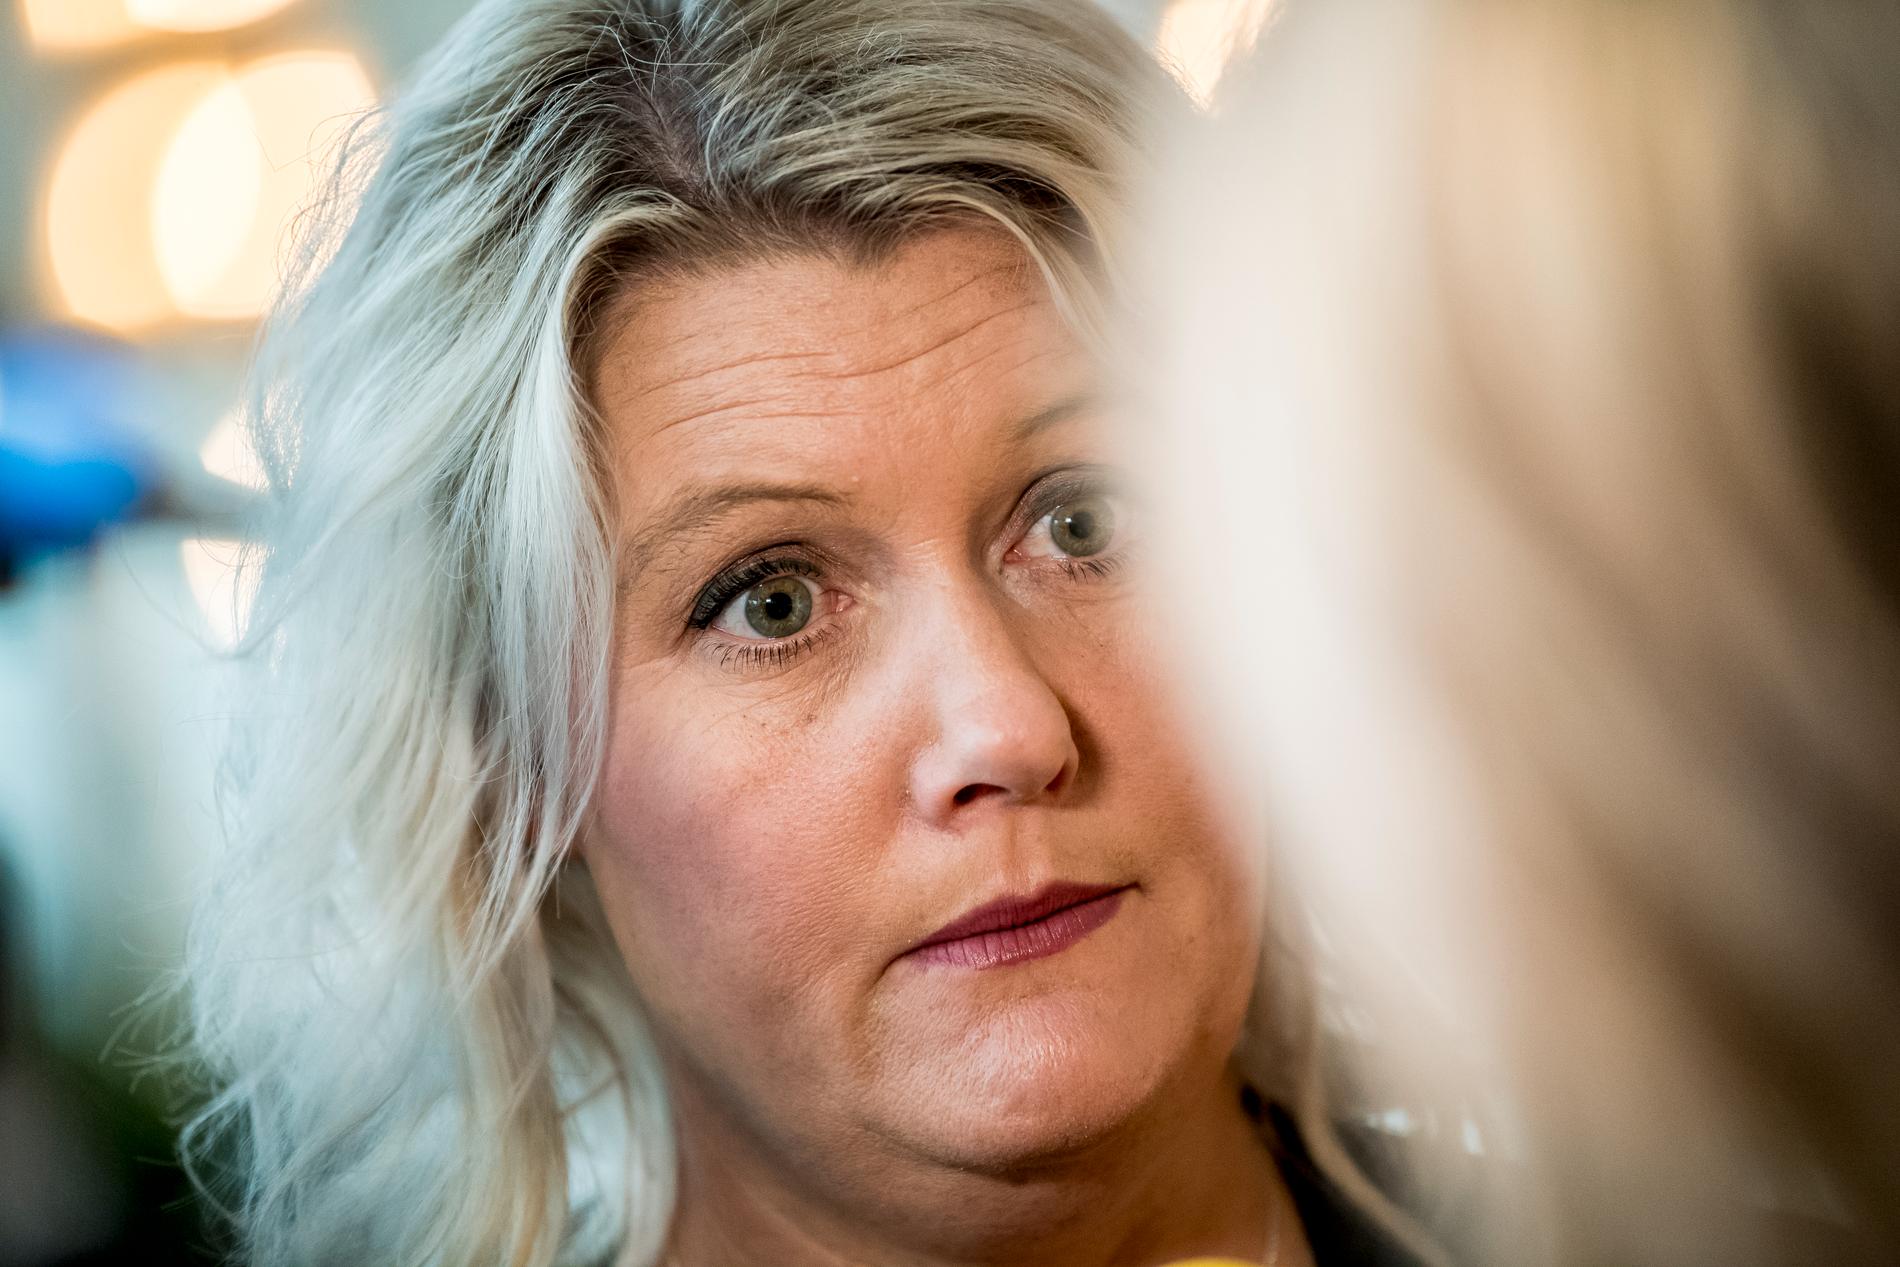 Lena Rådström Baastad